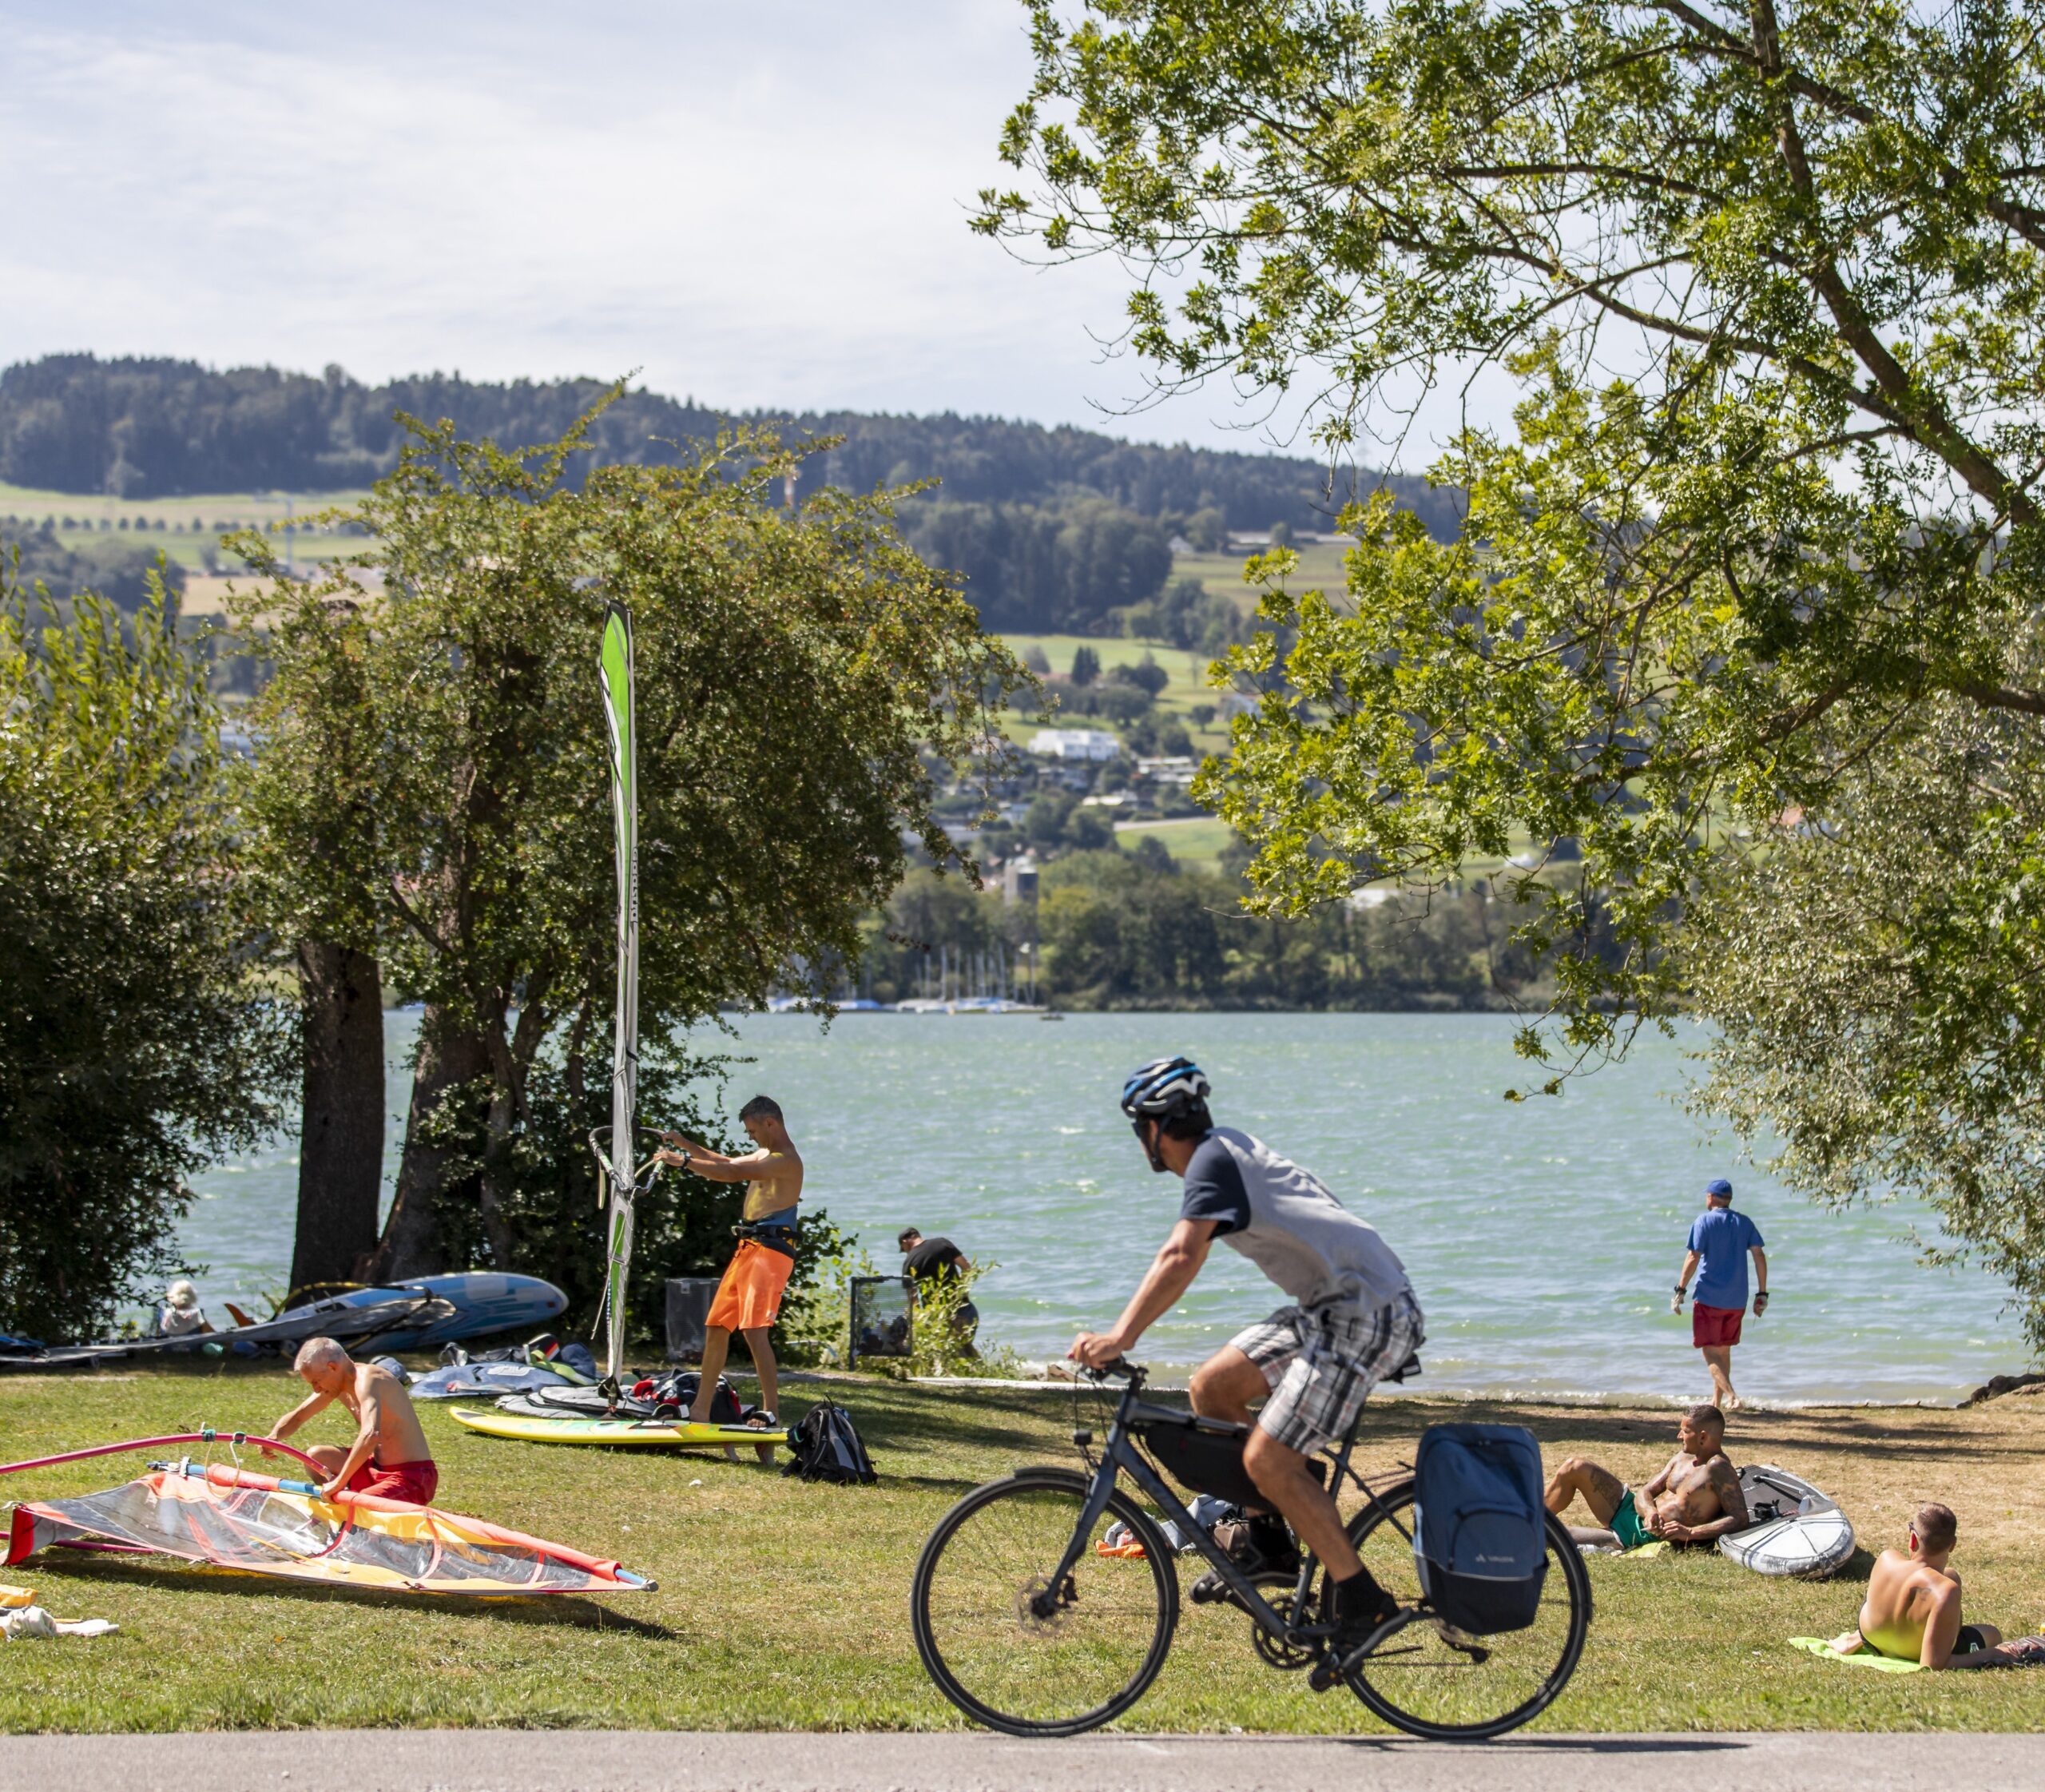 Sportlich angezogener Radfahrer am Ufer des Greifensees